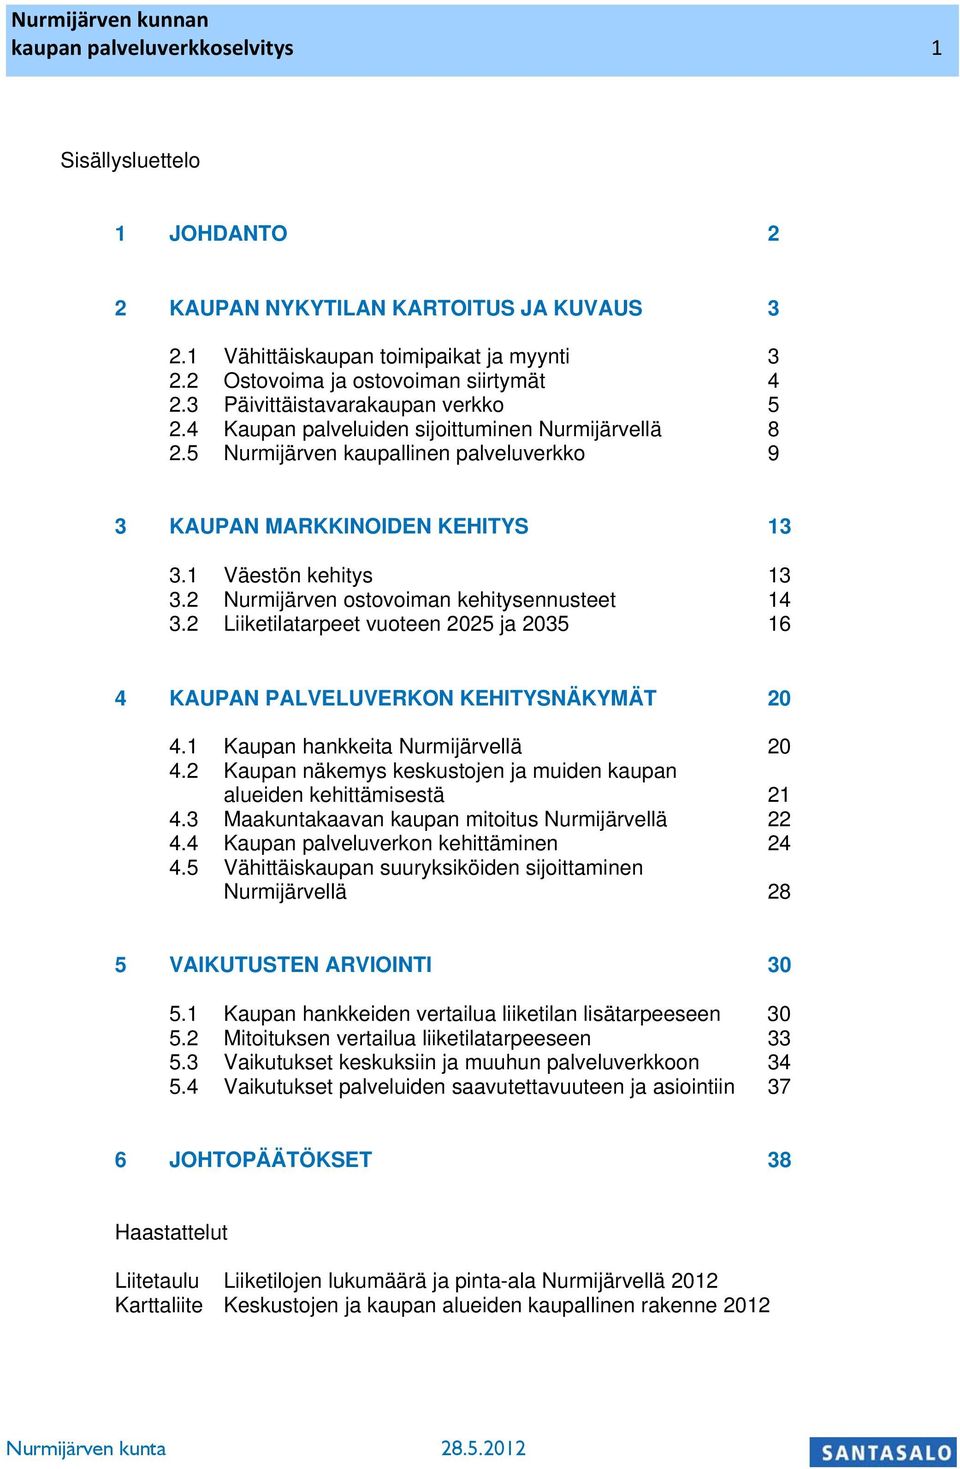 2 Nurmijärven ostovoiman ehitysennusteet 14 3.2 Liietilatarpeet vuoteen 2025 ja 2035 16 4 KAUPAN PALVELUVERKON KEHITYSNÄKYMÄT 20 4.1 Kaupan haneita Nurmijärvellä 20 4.